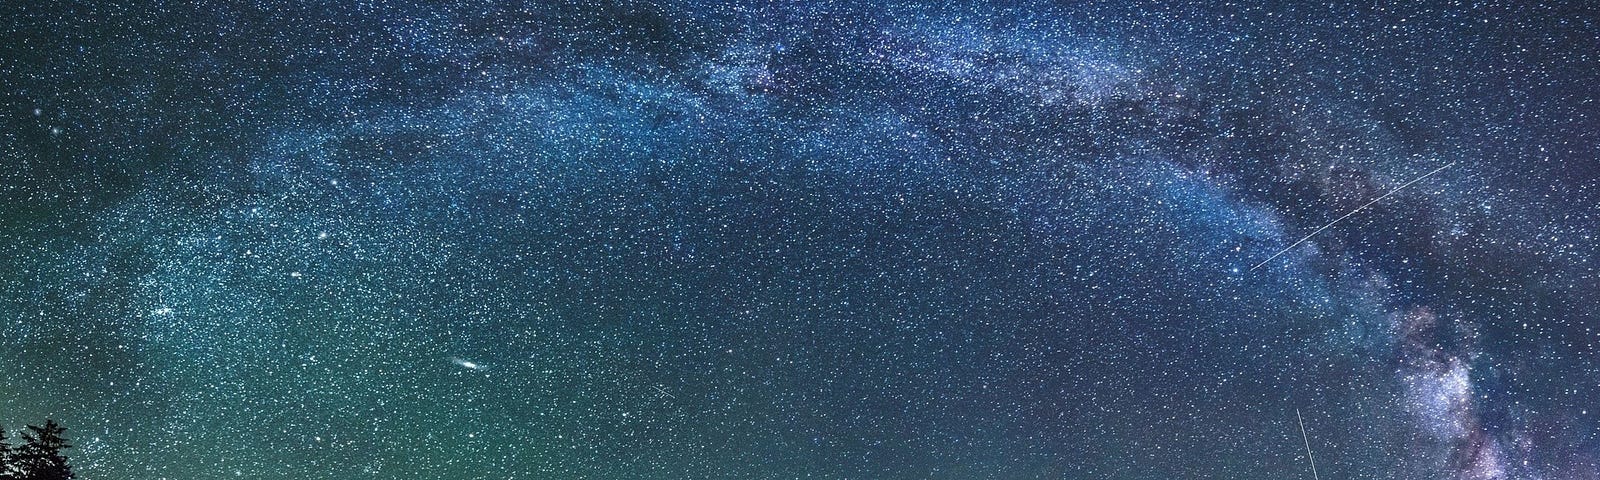 Interstellar Background — http://uoregon.edu/